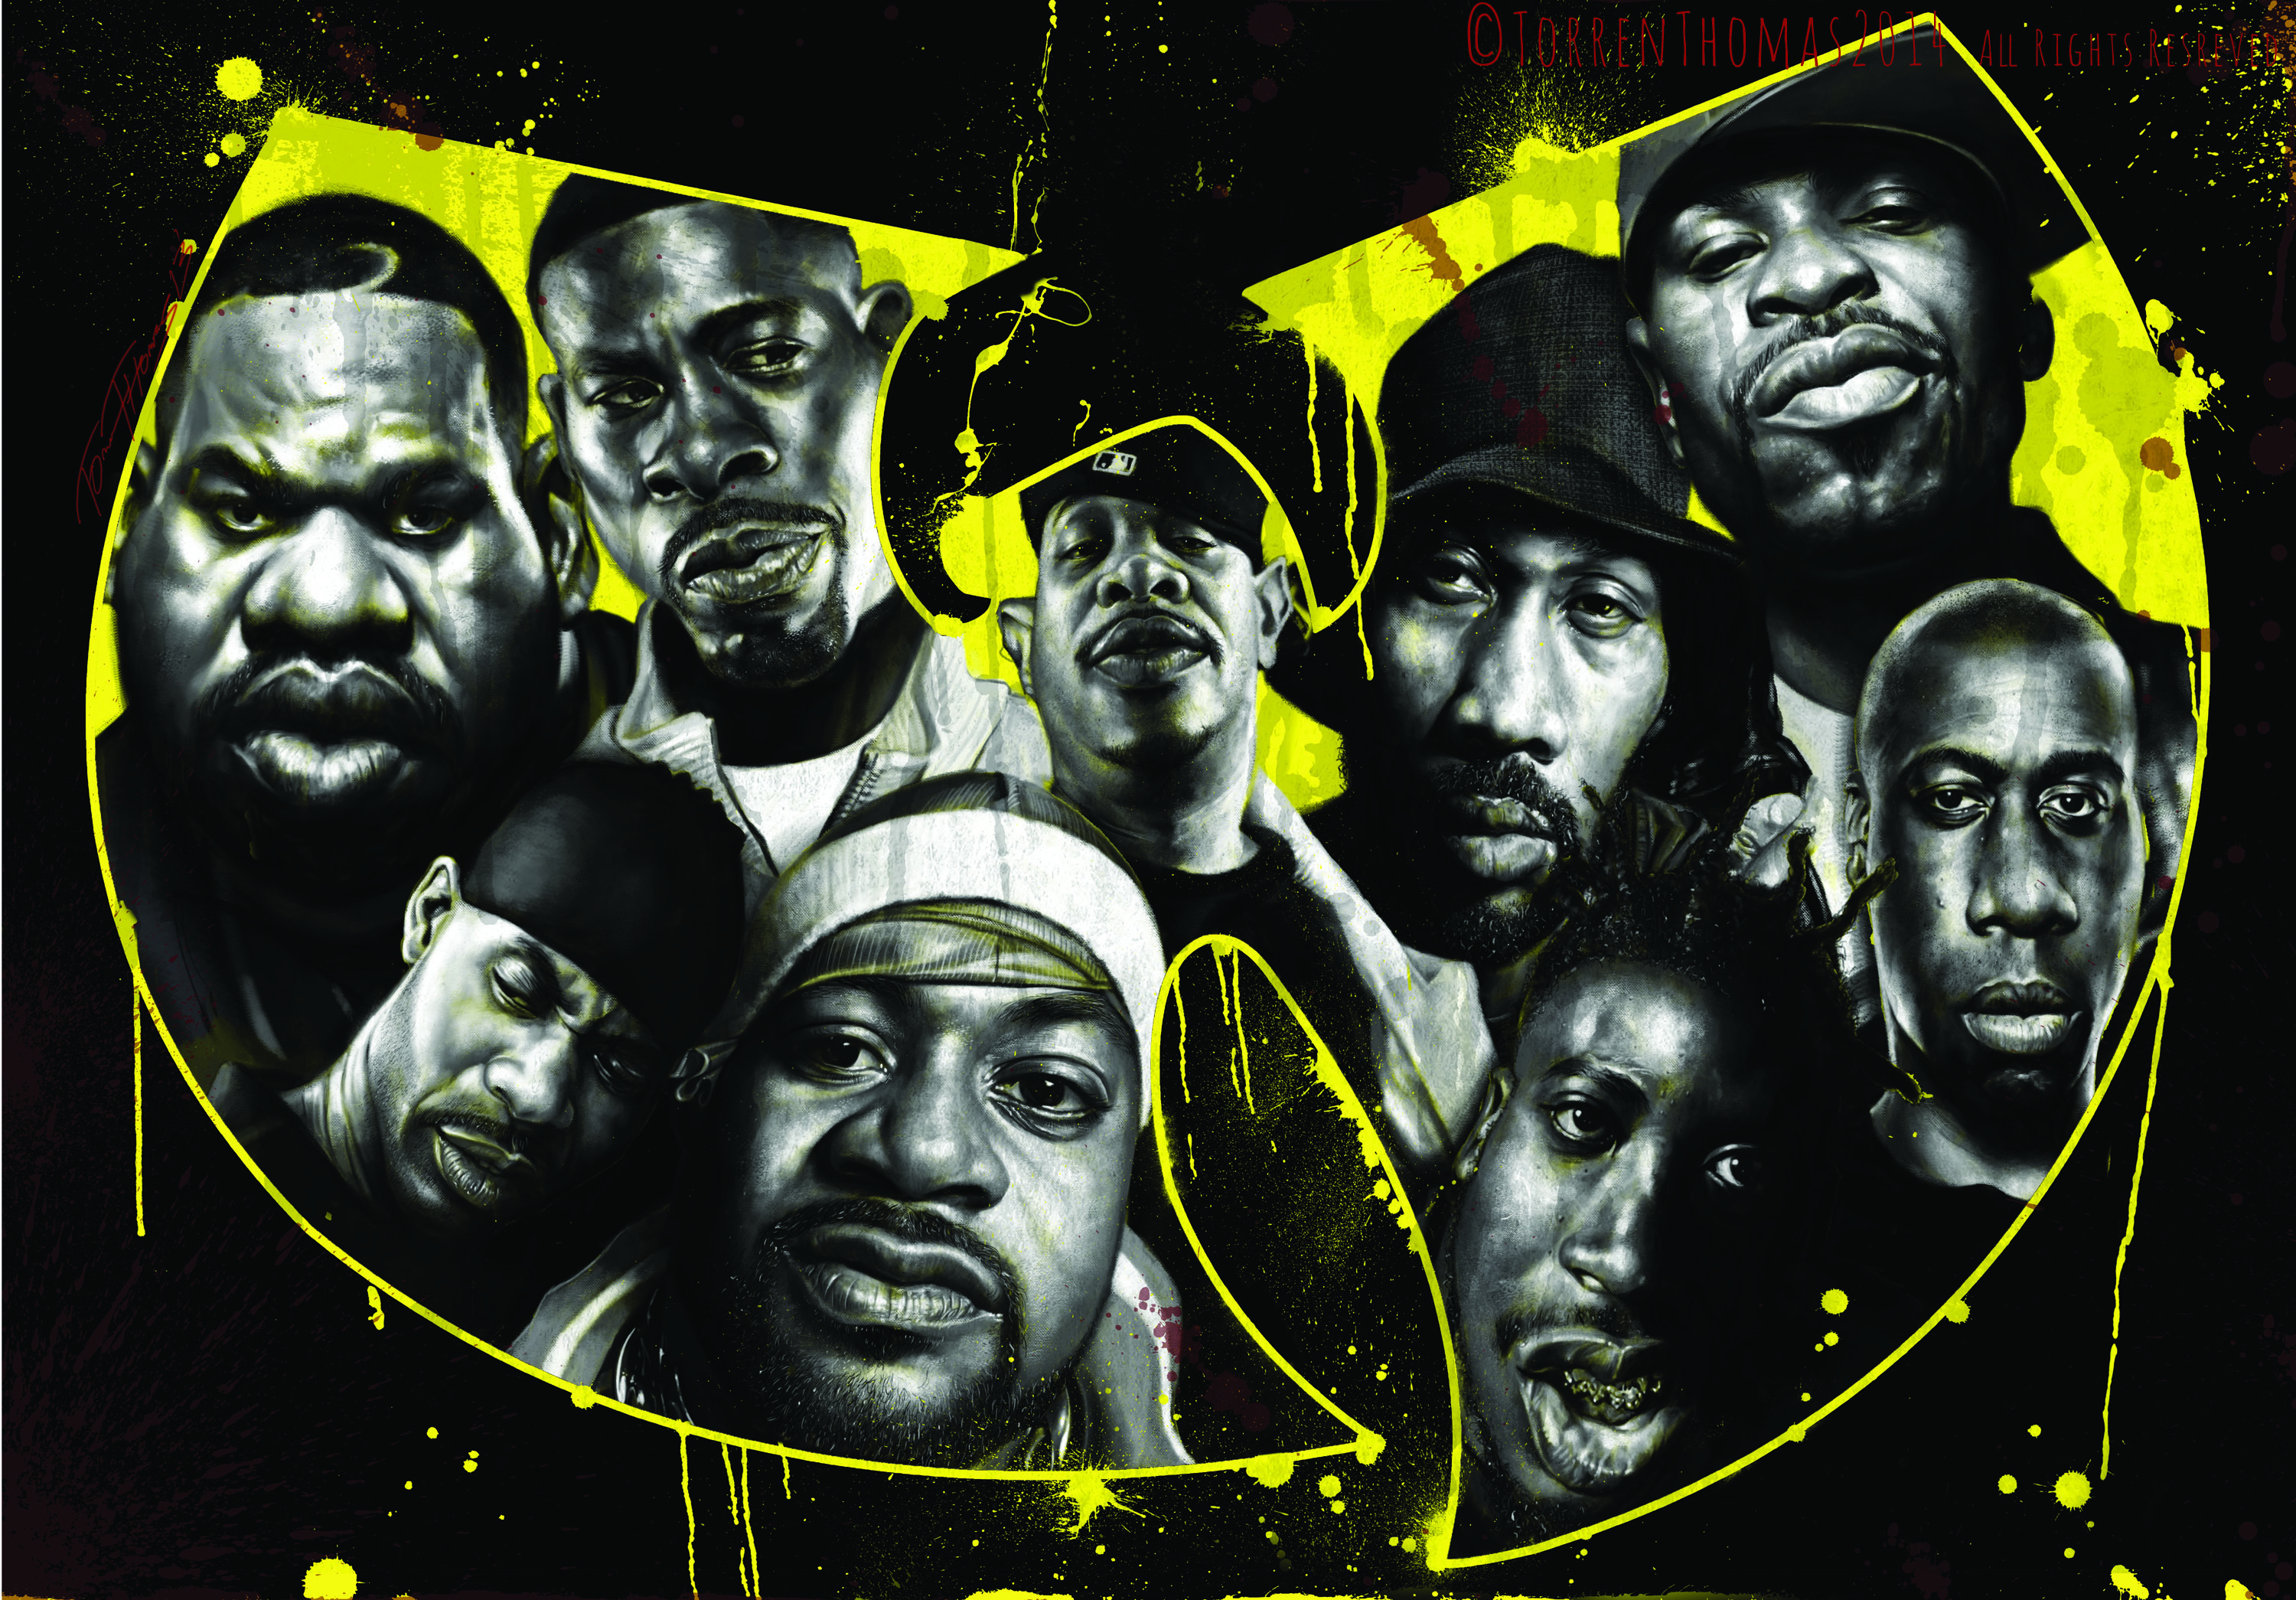 Digital Caricature of all 9 original members of the rap group